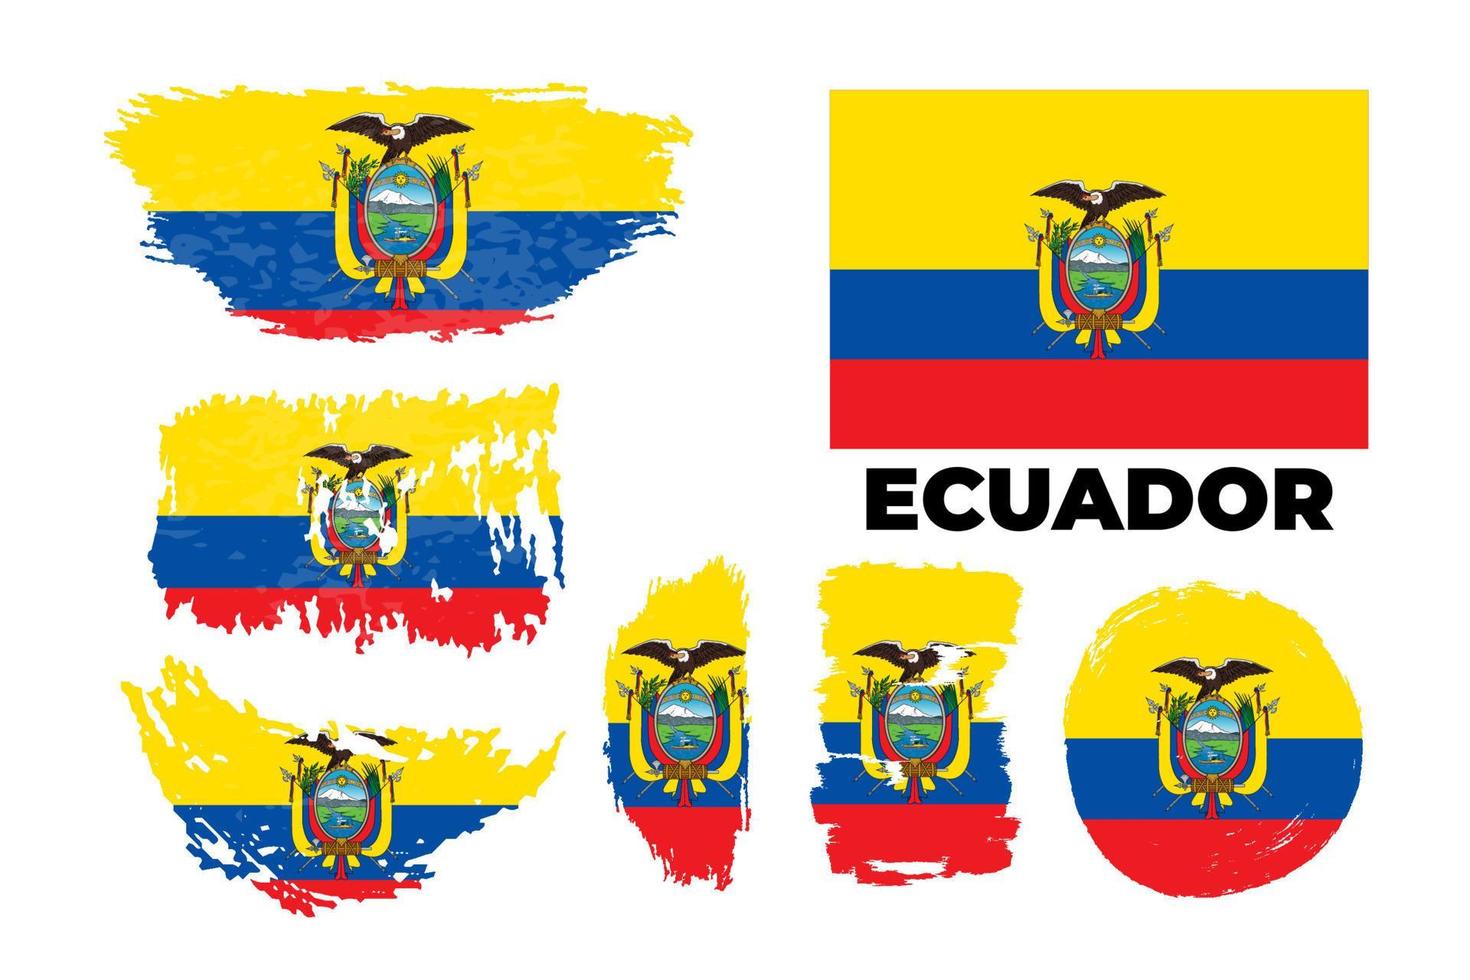 bandera de ecuador, república de ecuador. plantilla para el diseño de premios, un documento oficial con la bandera de ecuador. brillante, colorido vector stock grunge ilustración conjunto.